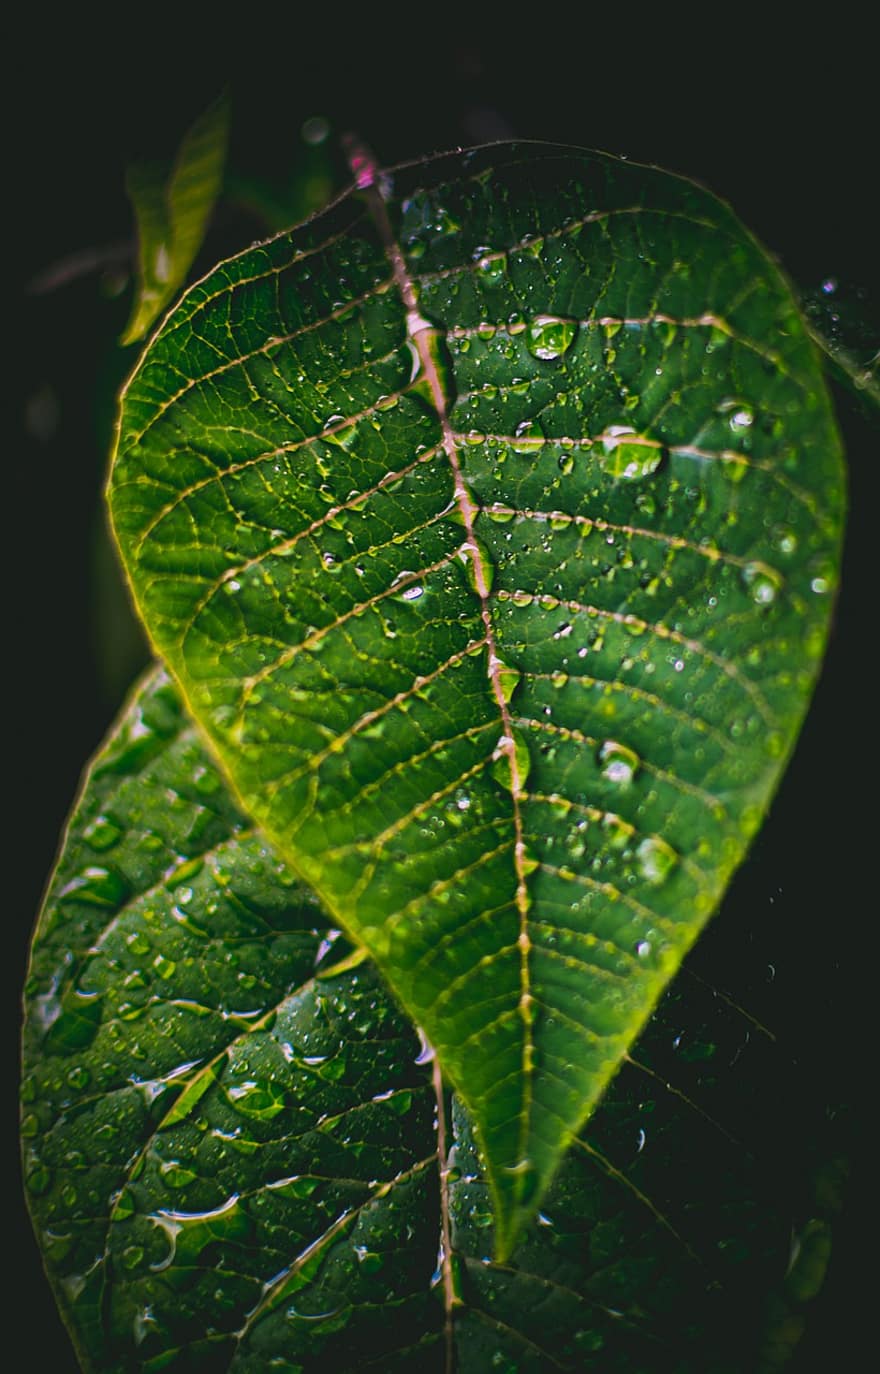 дъждовни капки, зелен лист, дъжд, зелен, природа, листо, растение, мокър, дъждовна капка, вода, градина